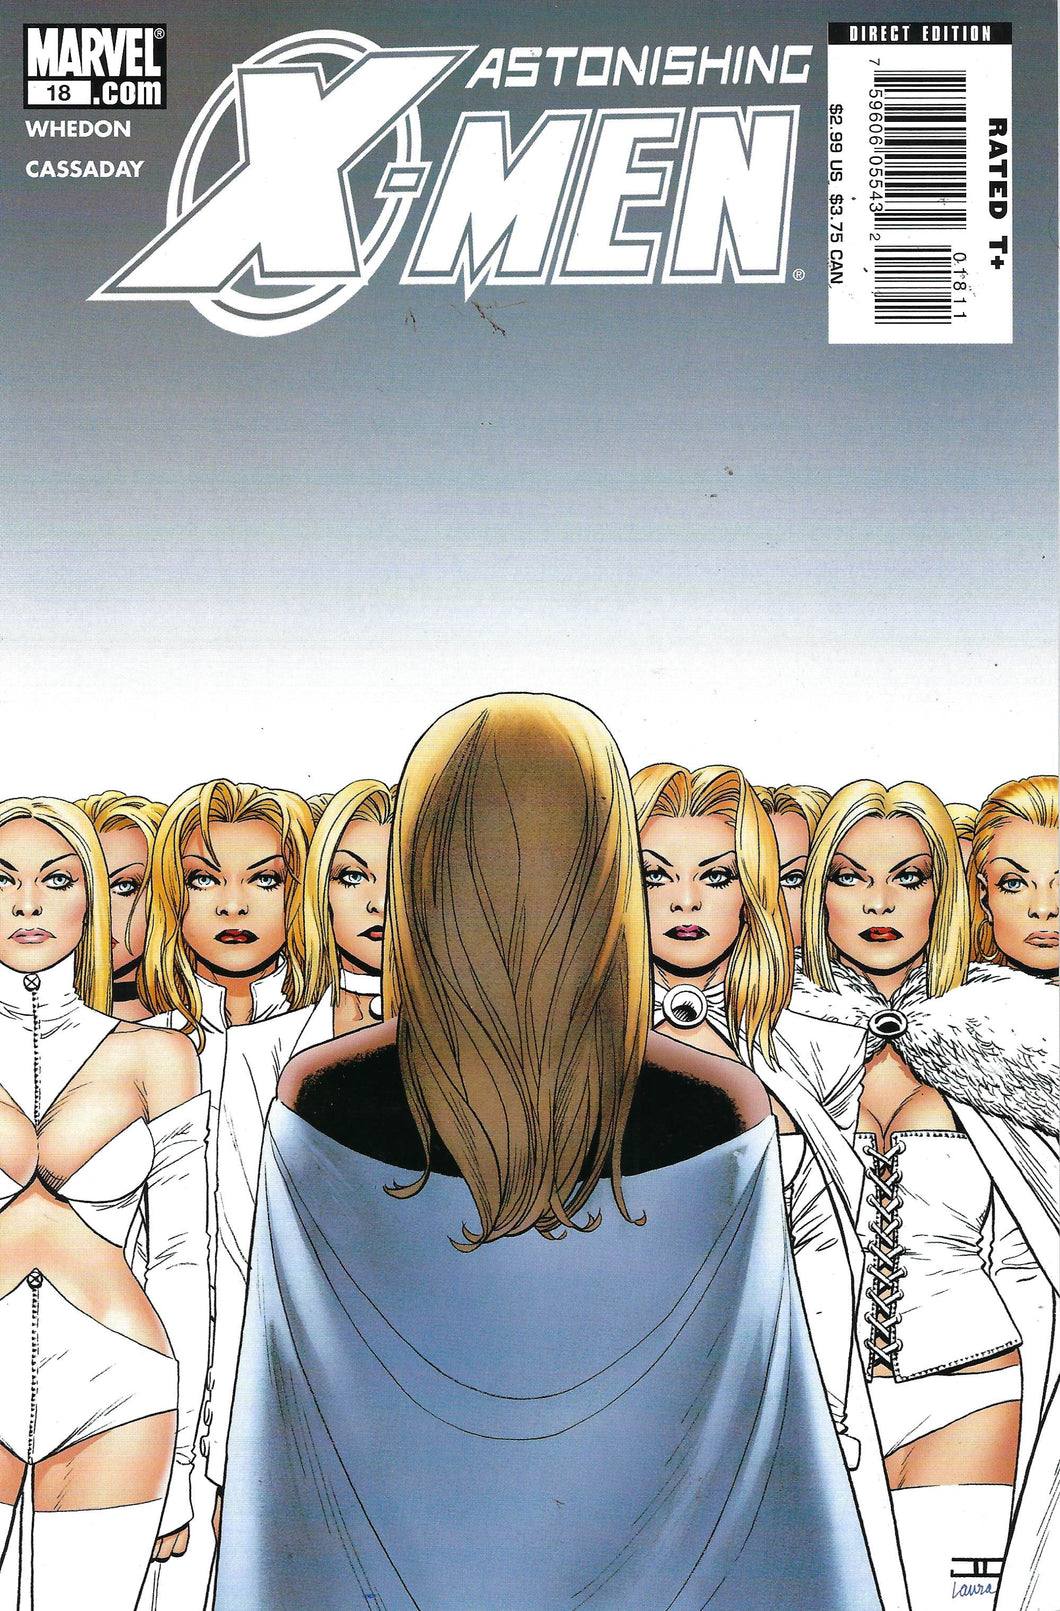 Astonishing X-Men #18 Vol. 3 (2006) John Cassaday Art. Written by Joss Whedon